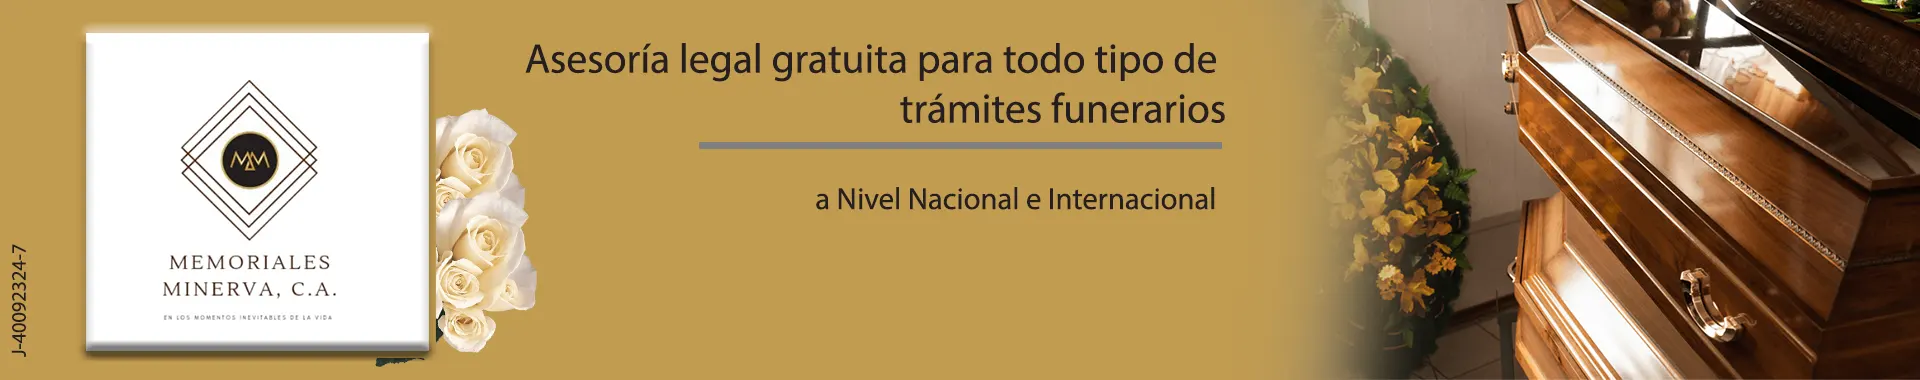 Imagen 5 del perfil de Cremaciones y Exequias Memoriales Minerva